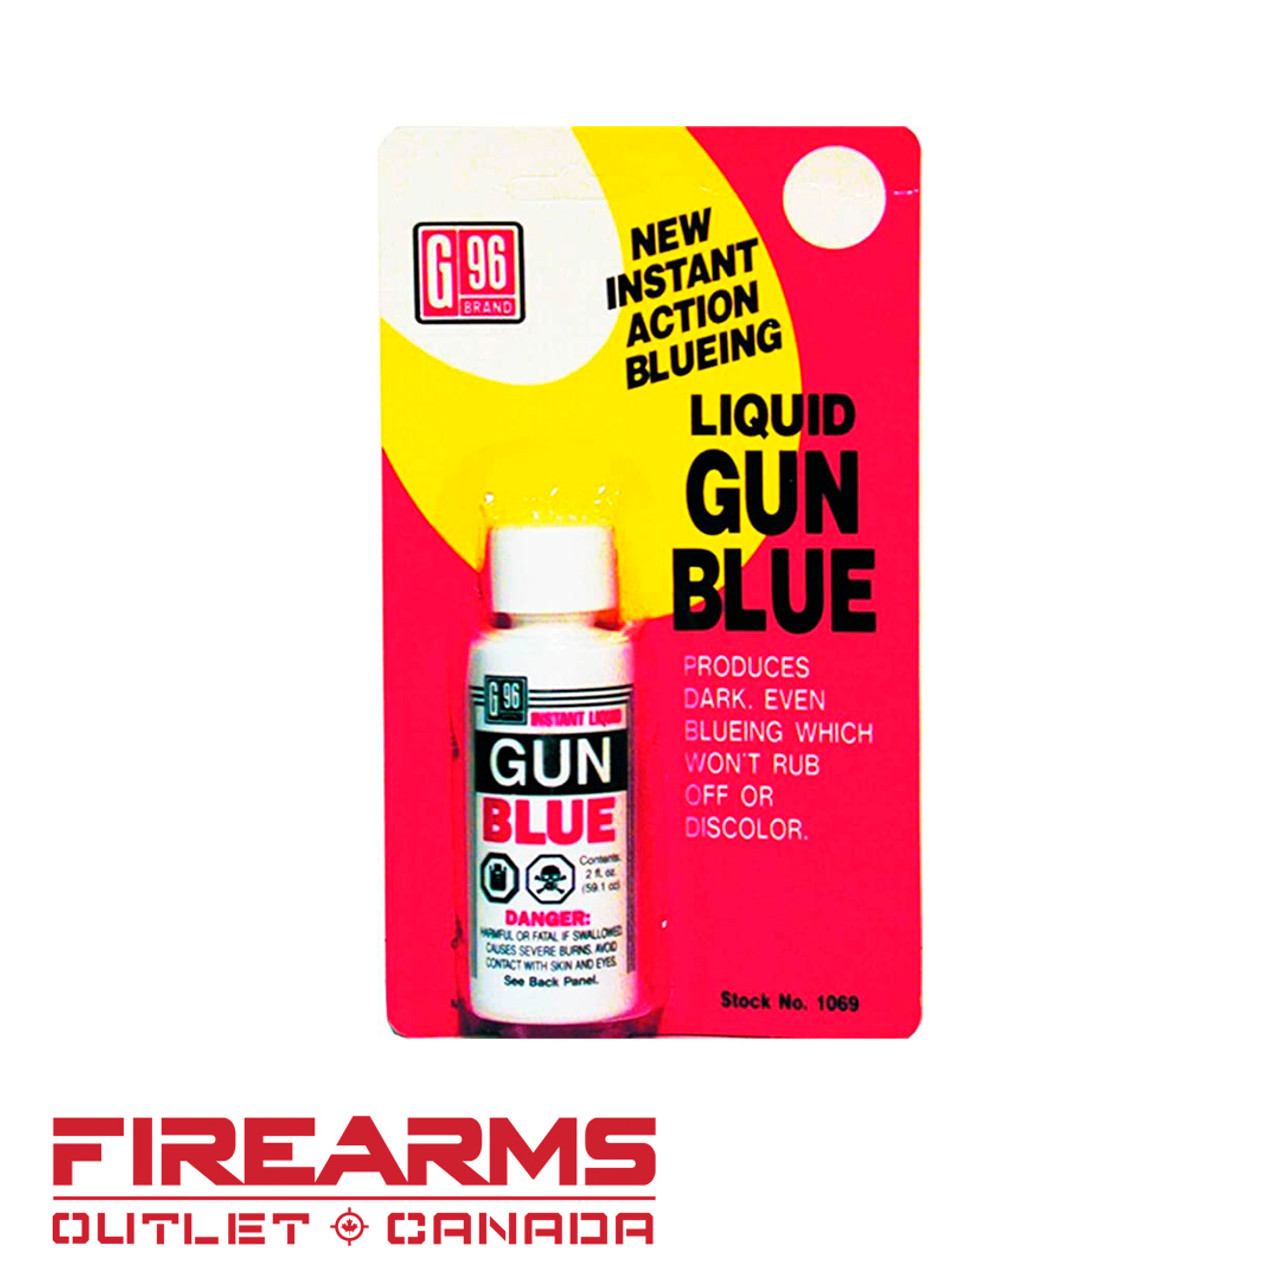 G96 Liquid Gun Blue - 2 oz. (59mL) [1069]